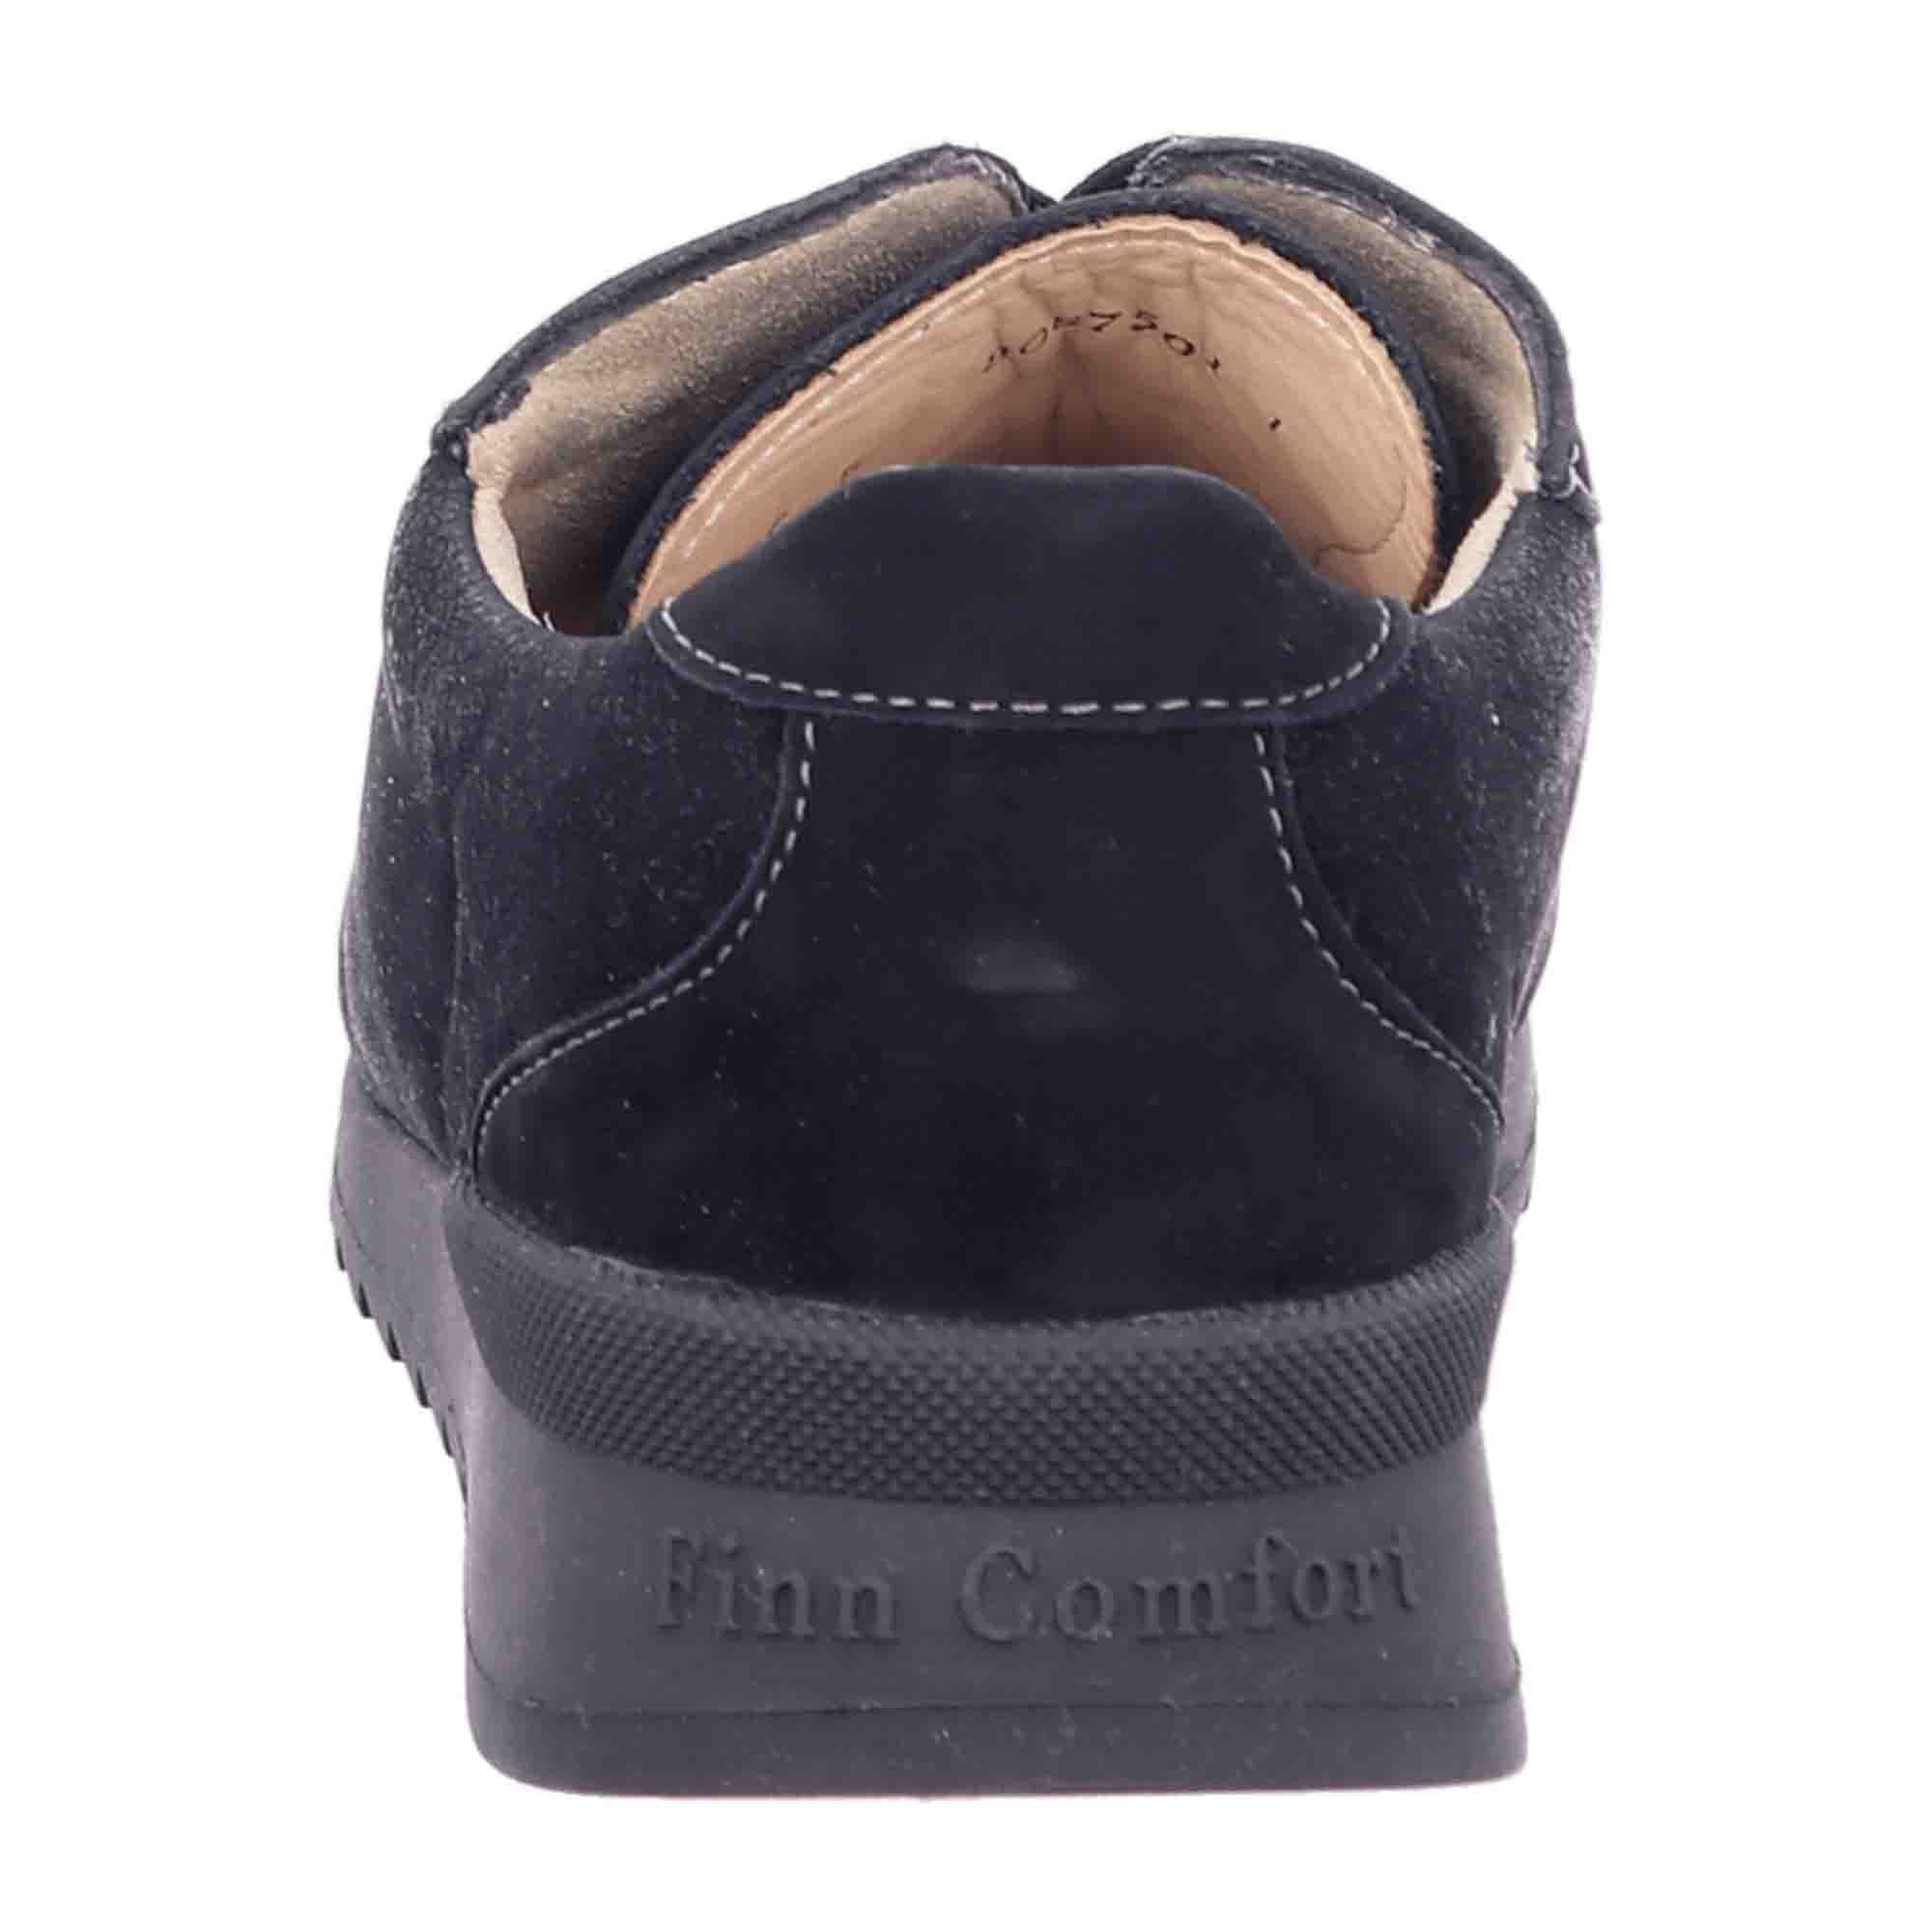 Finn Comfort Melk Women's Comfort Shoes - Elegant Black Leather